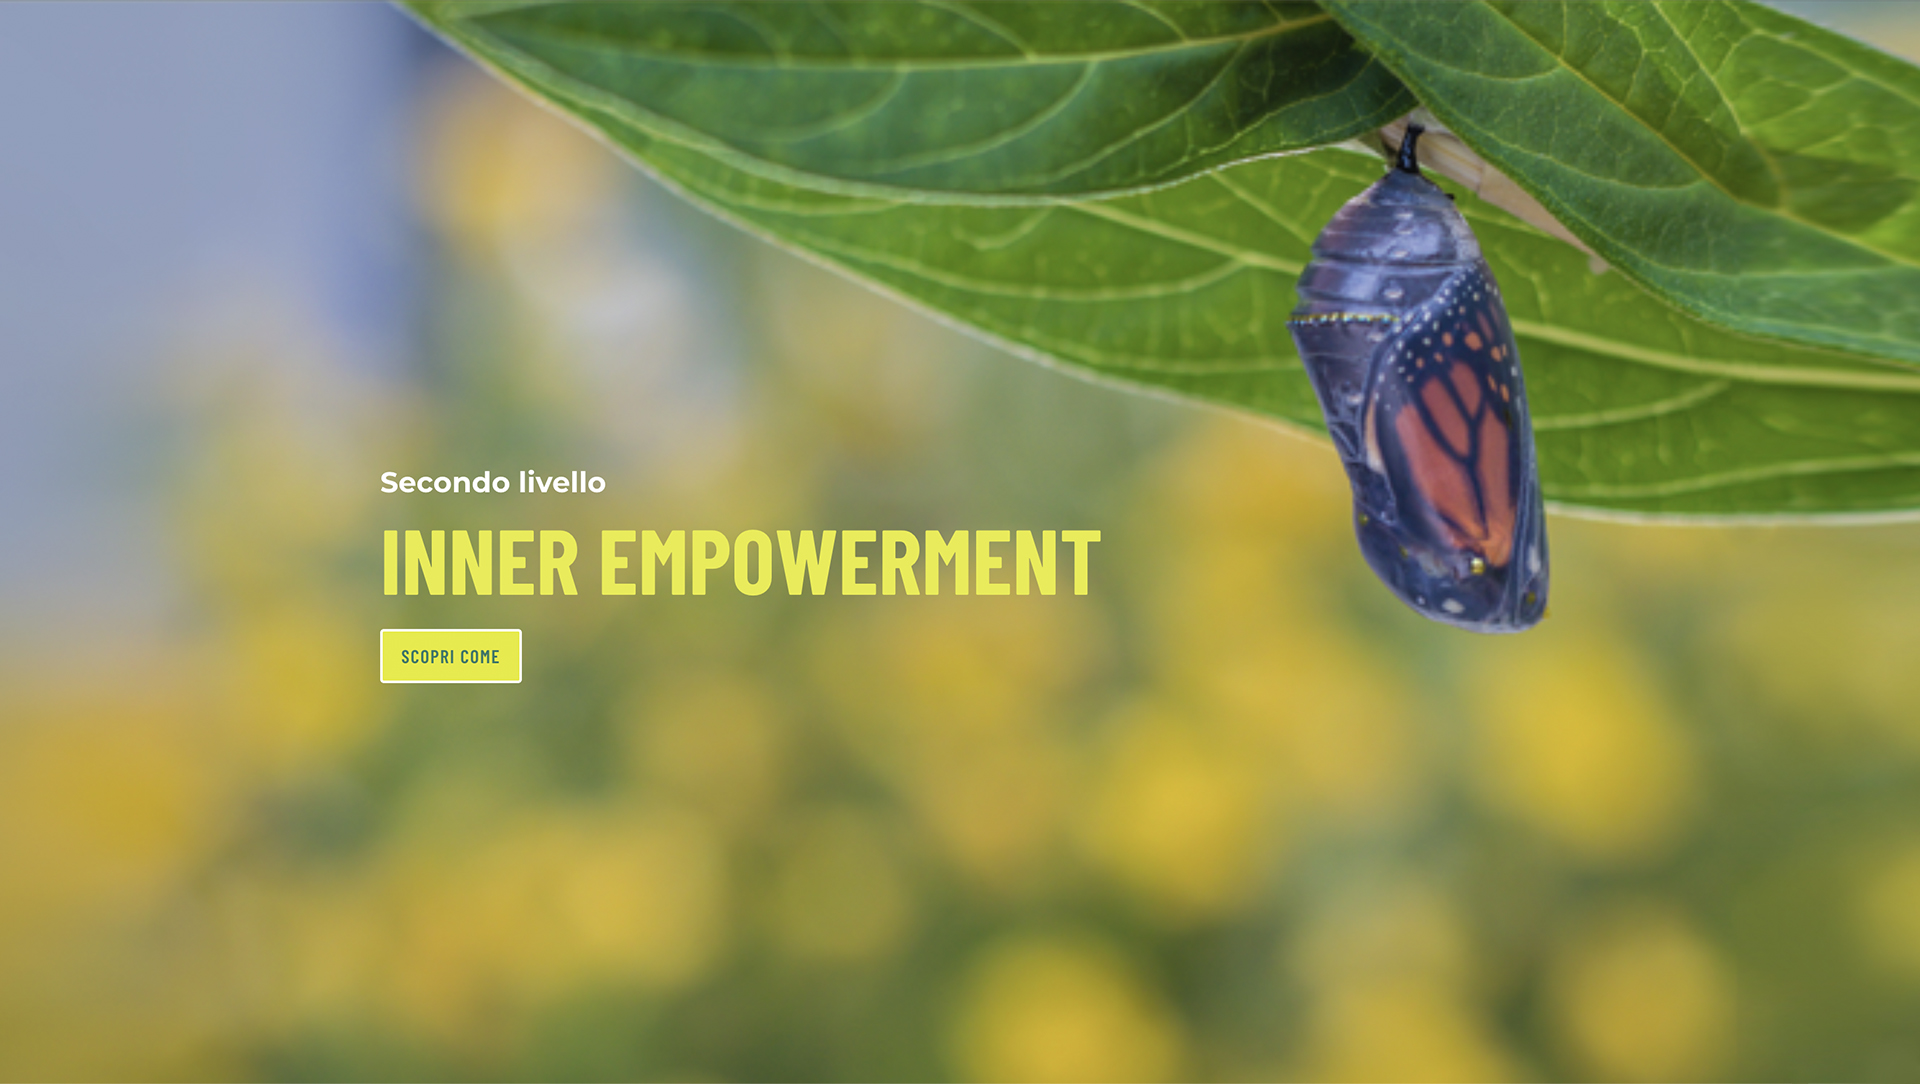 Inner empowerment